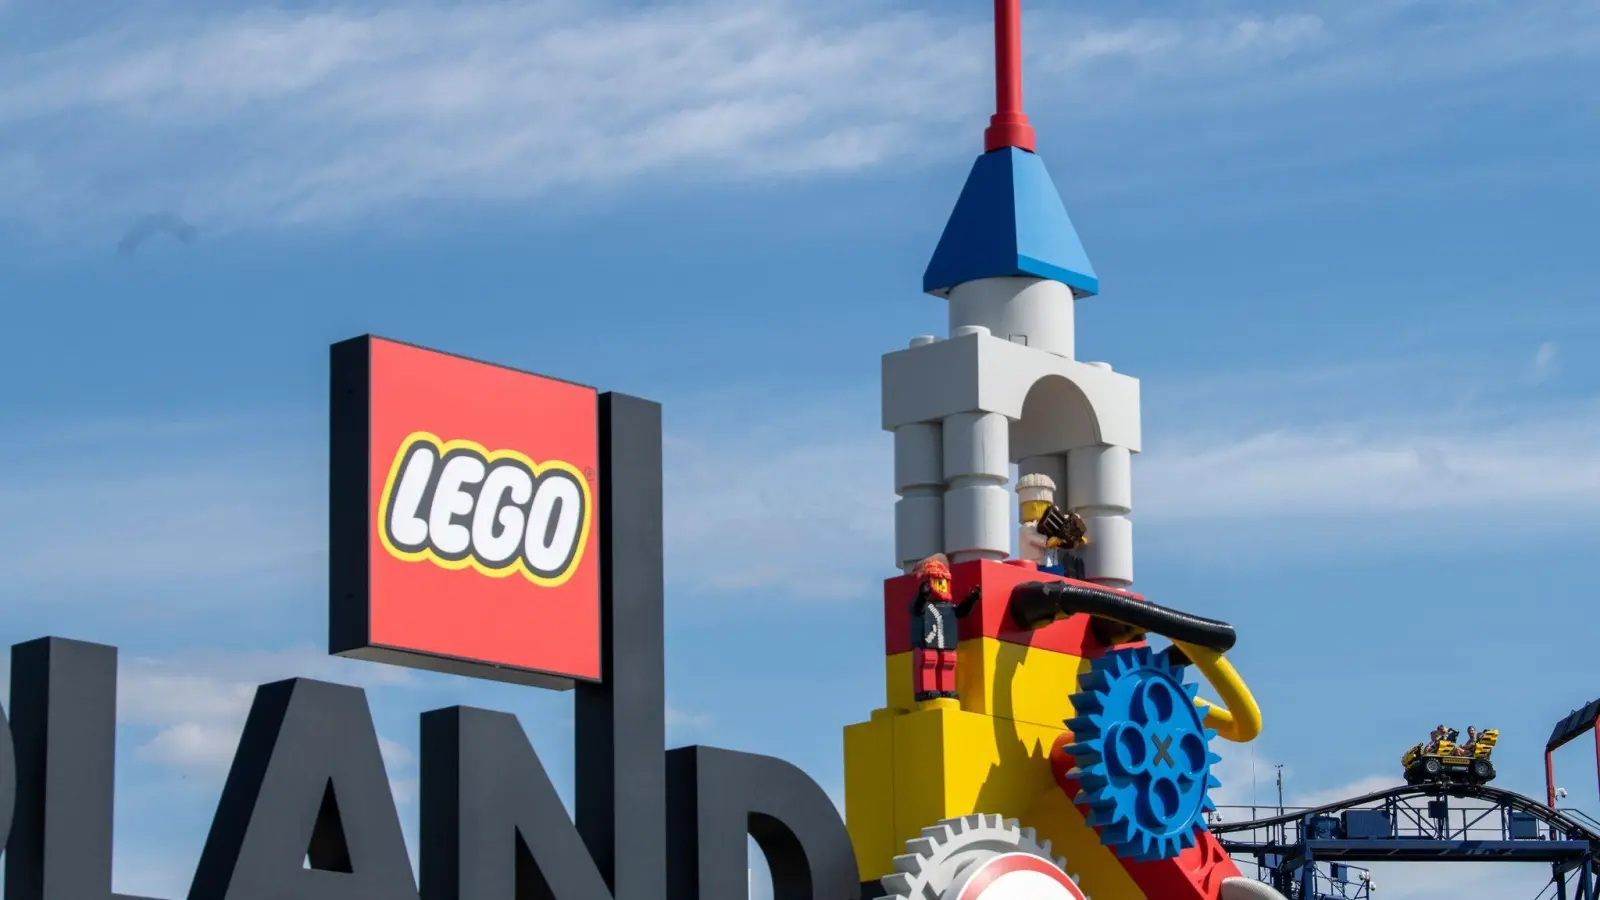 Die Unfall-Achterbahn „Feuerdrache“ im Legoland soll in einen Testbetrieb überprüft werden. (Foto: Stefan Puchner/dpa)